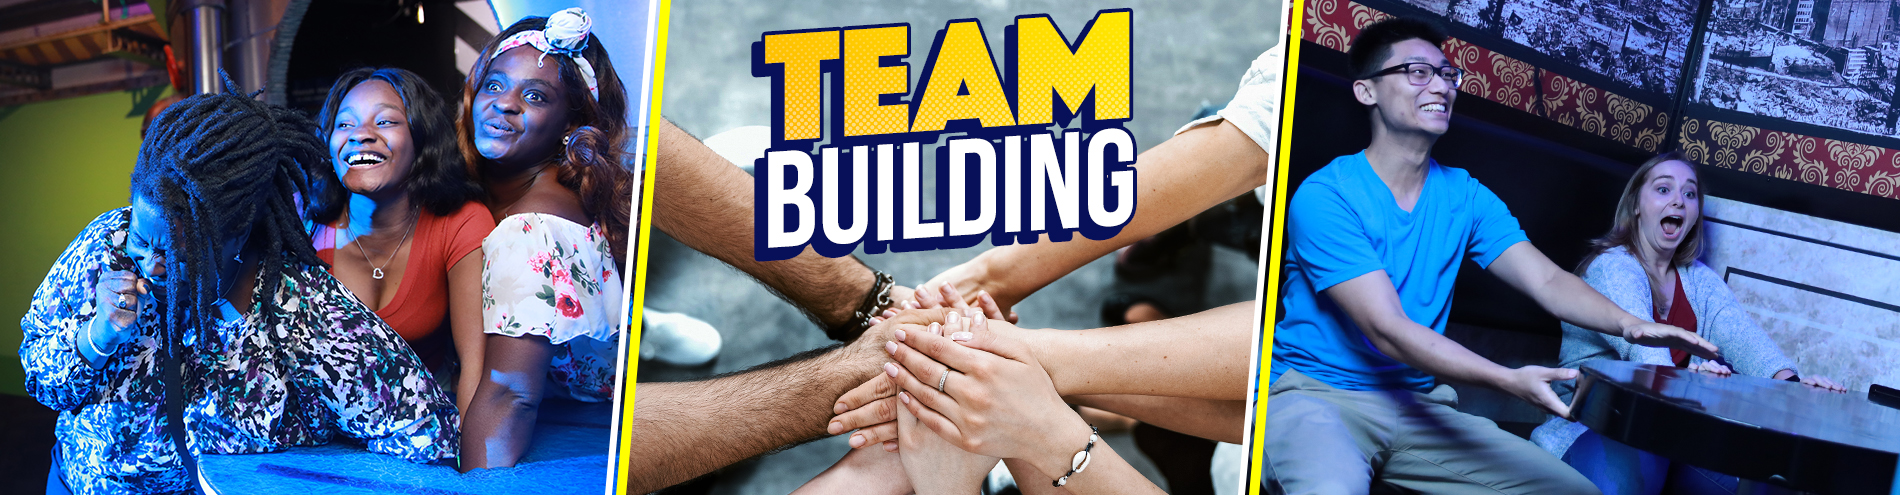 Team Building Header